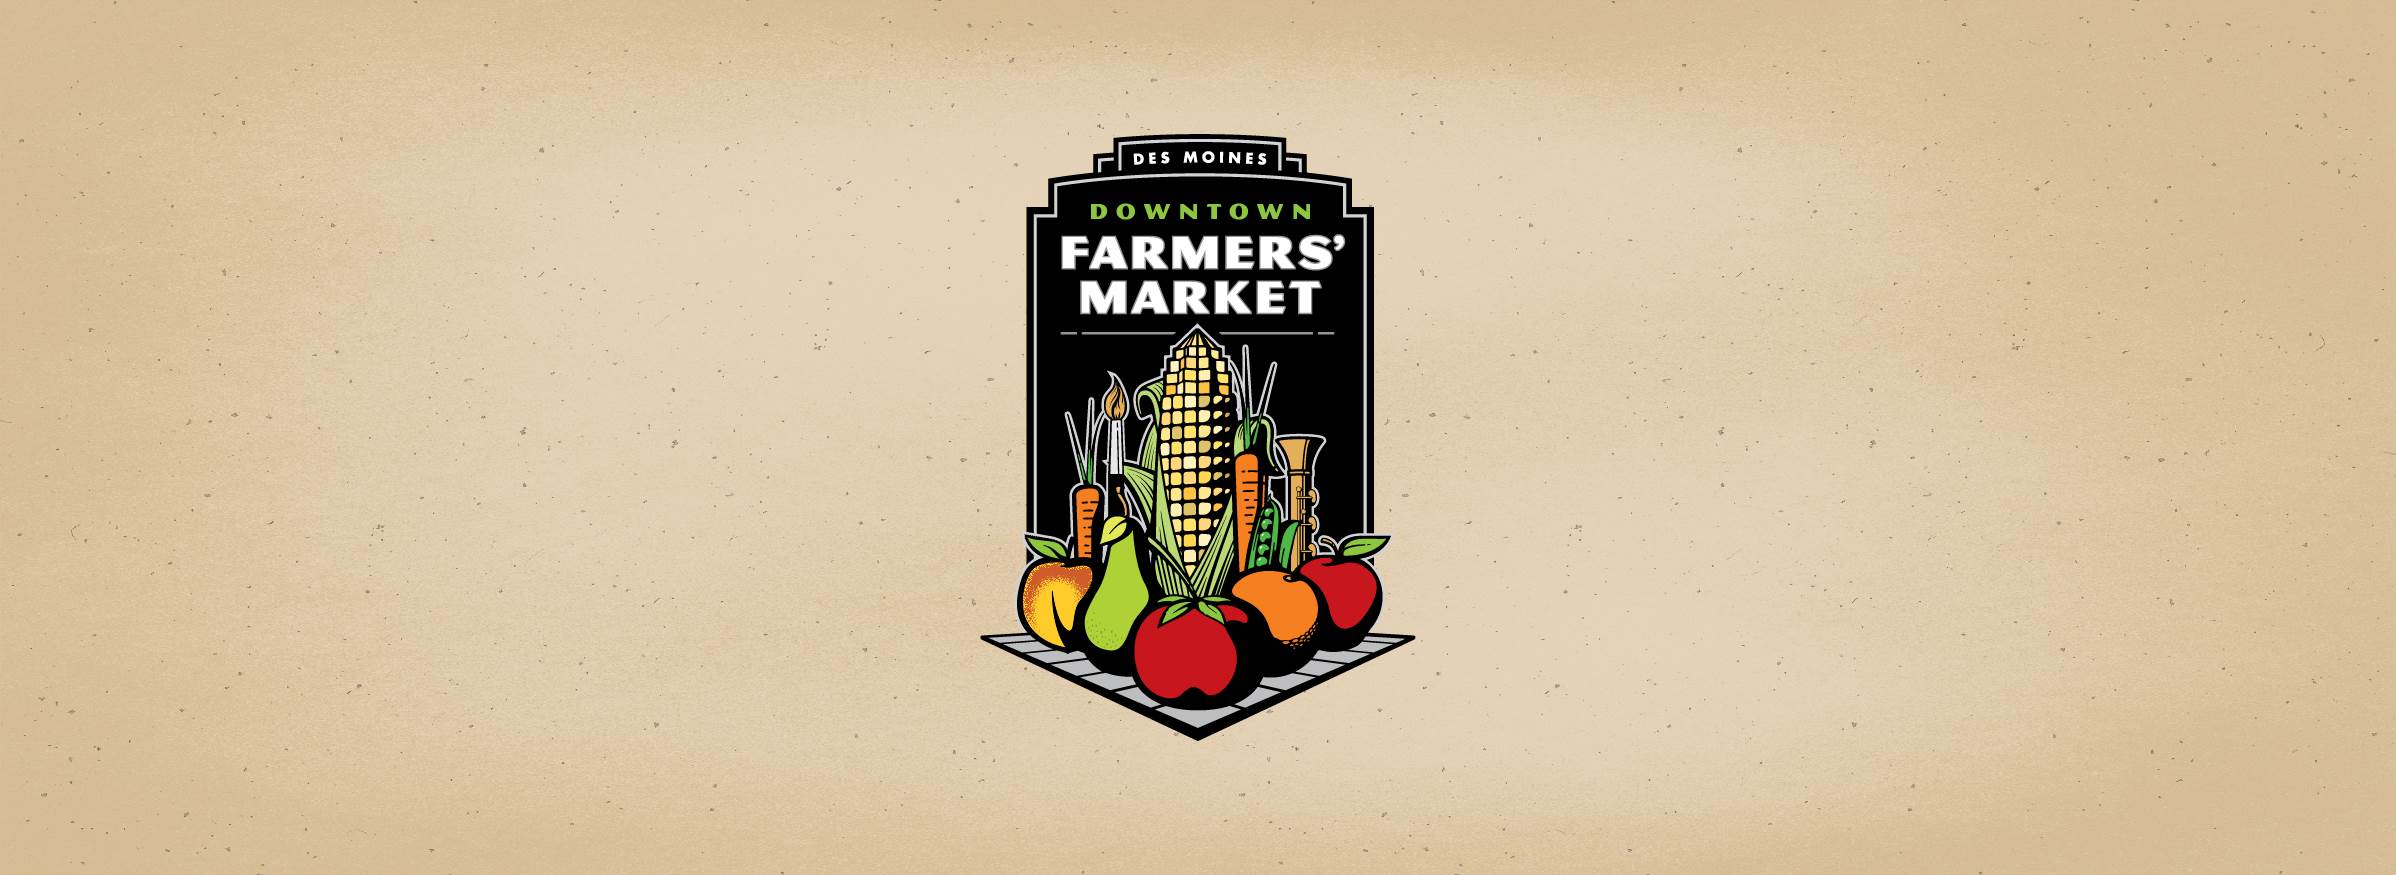 Des Moines' Downtown Farmers' Market